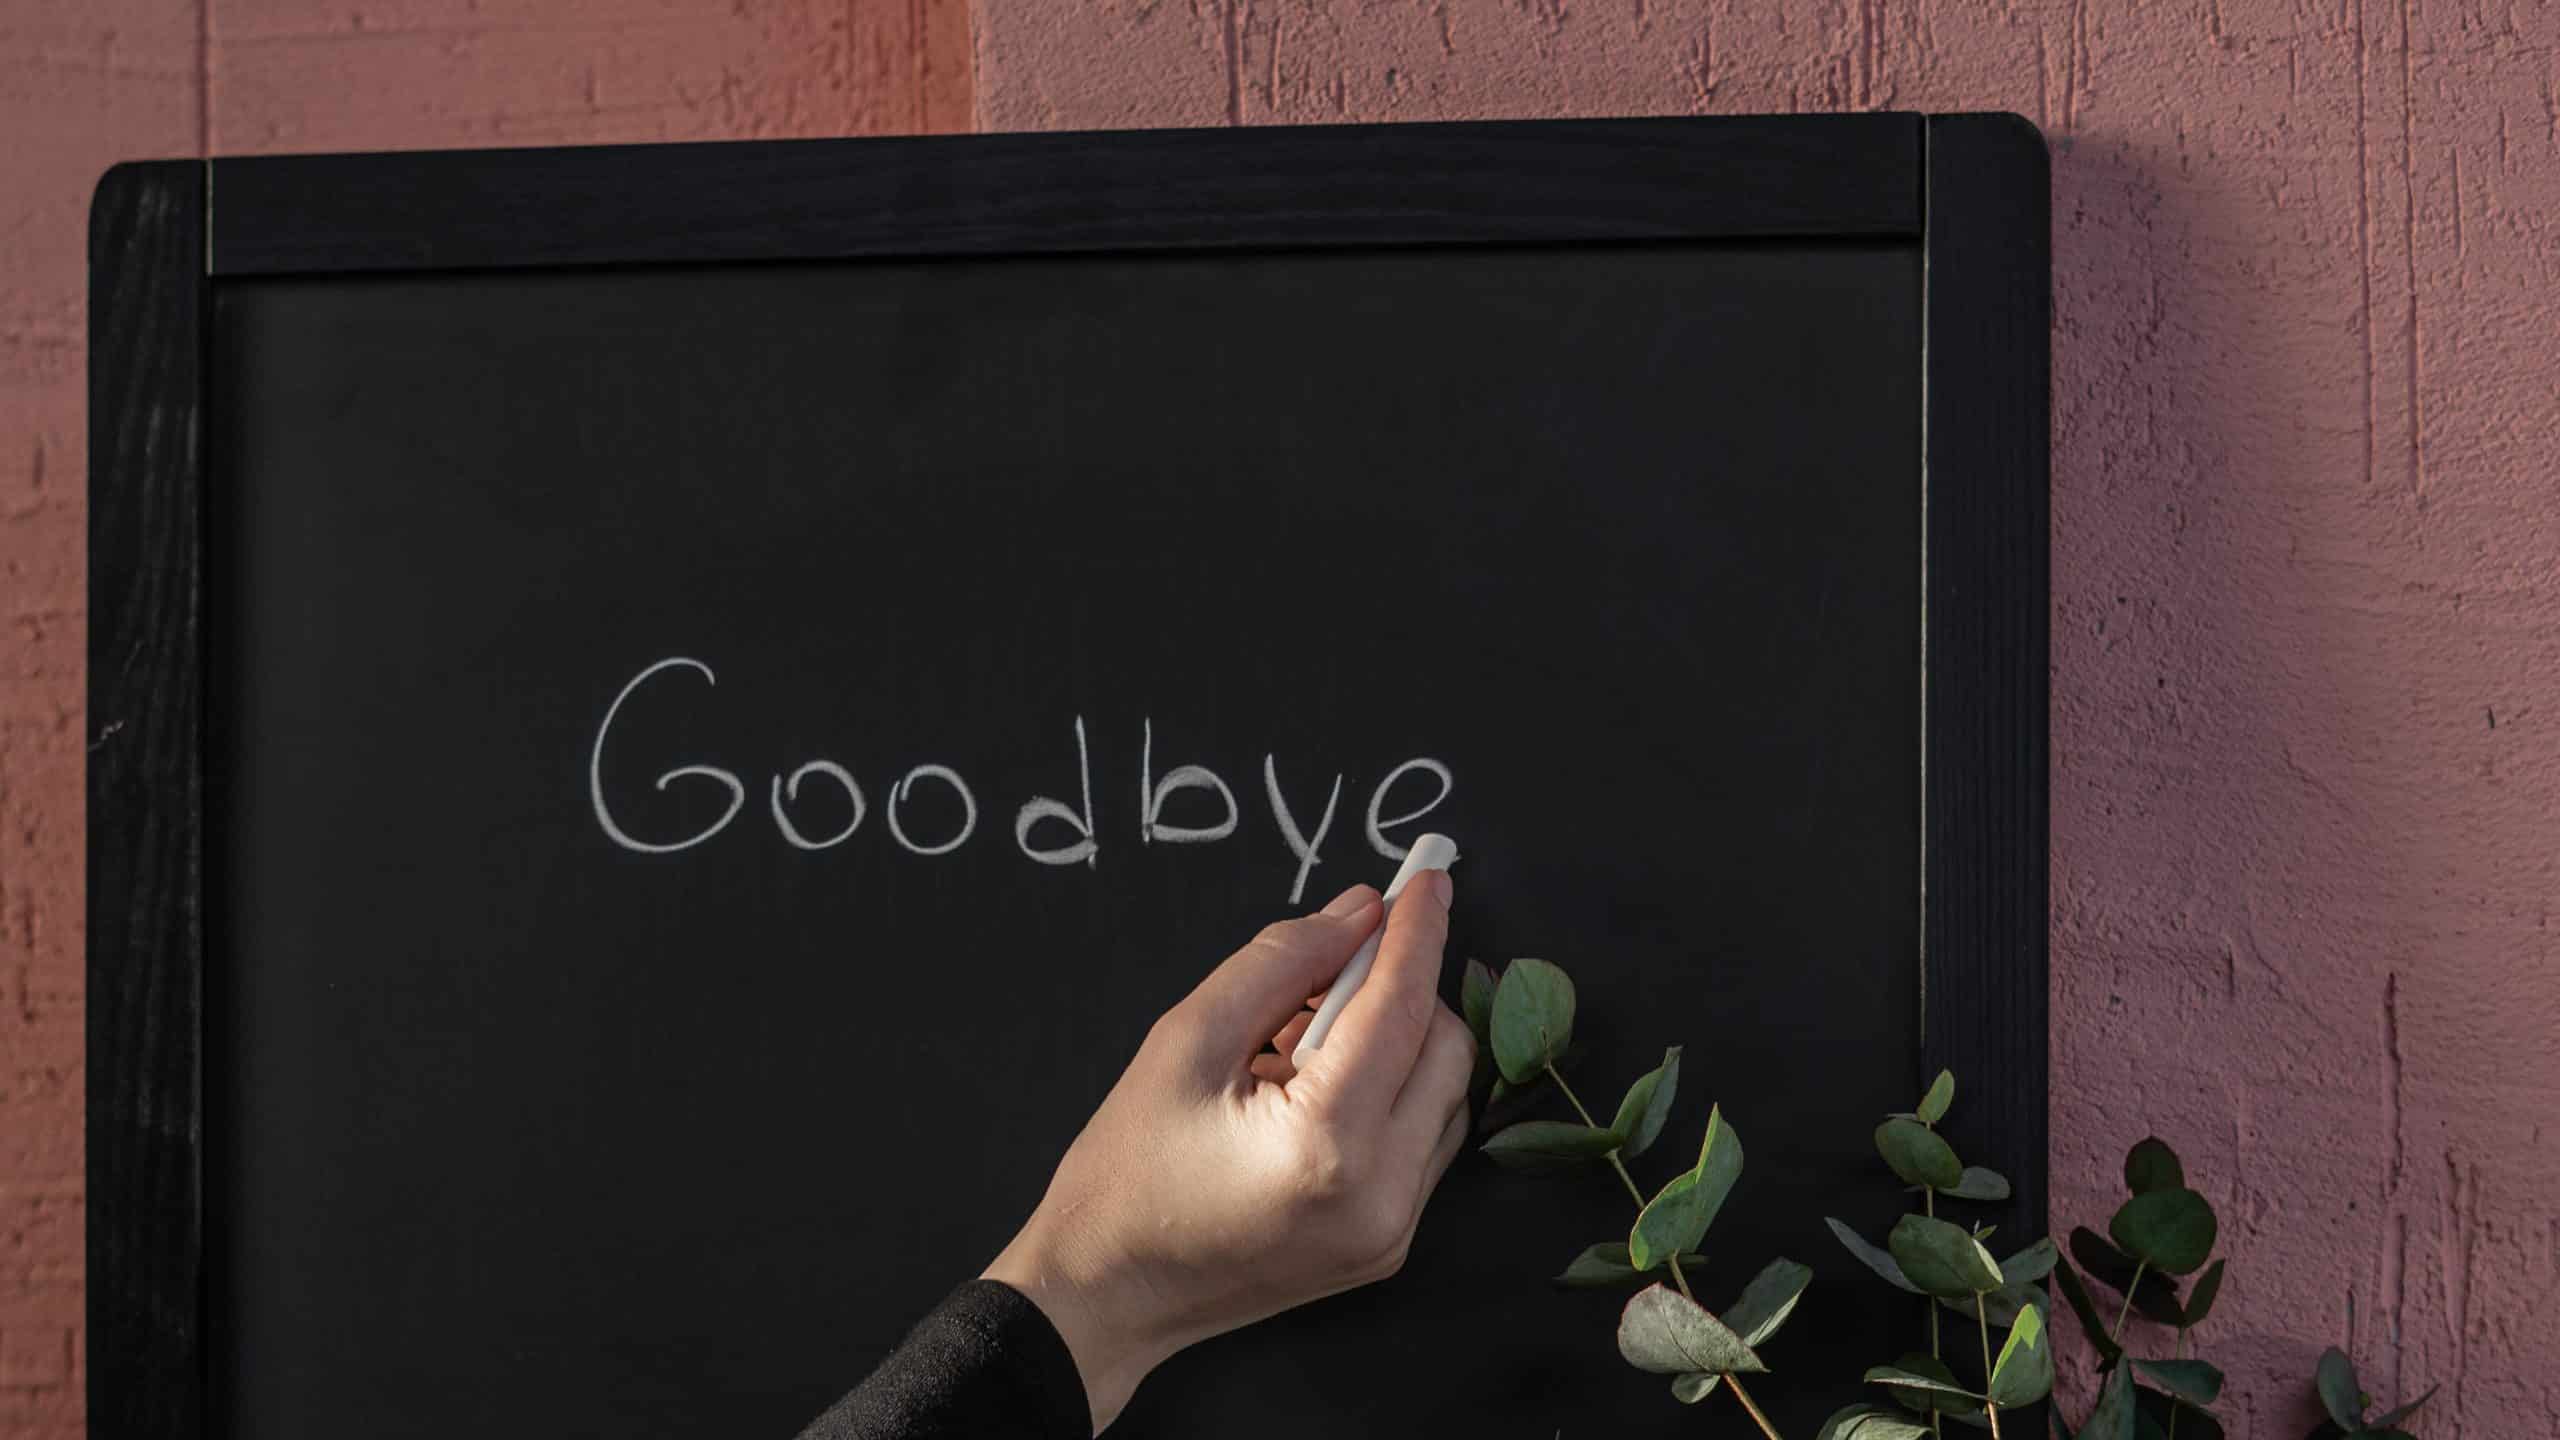 Mão escrevendo a palavra "goodbye" (adeus) em um quadro